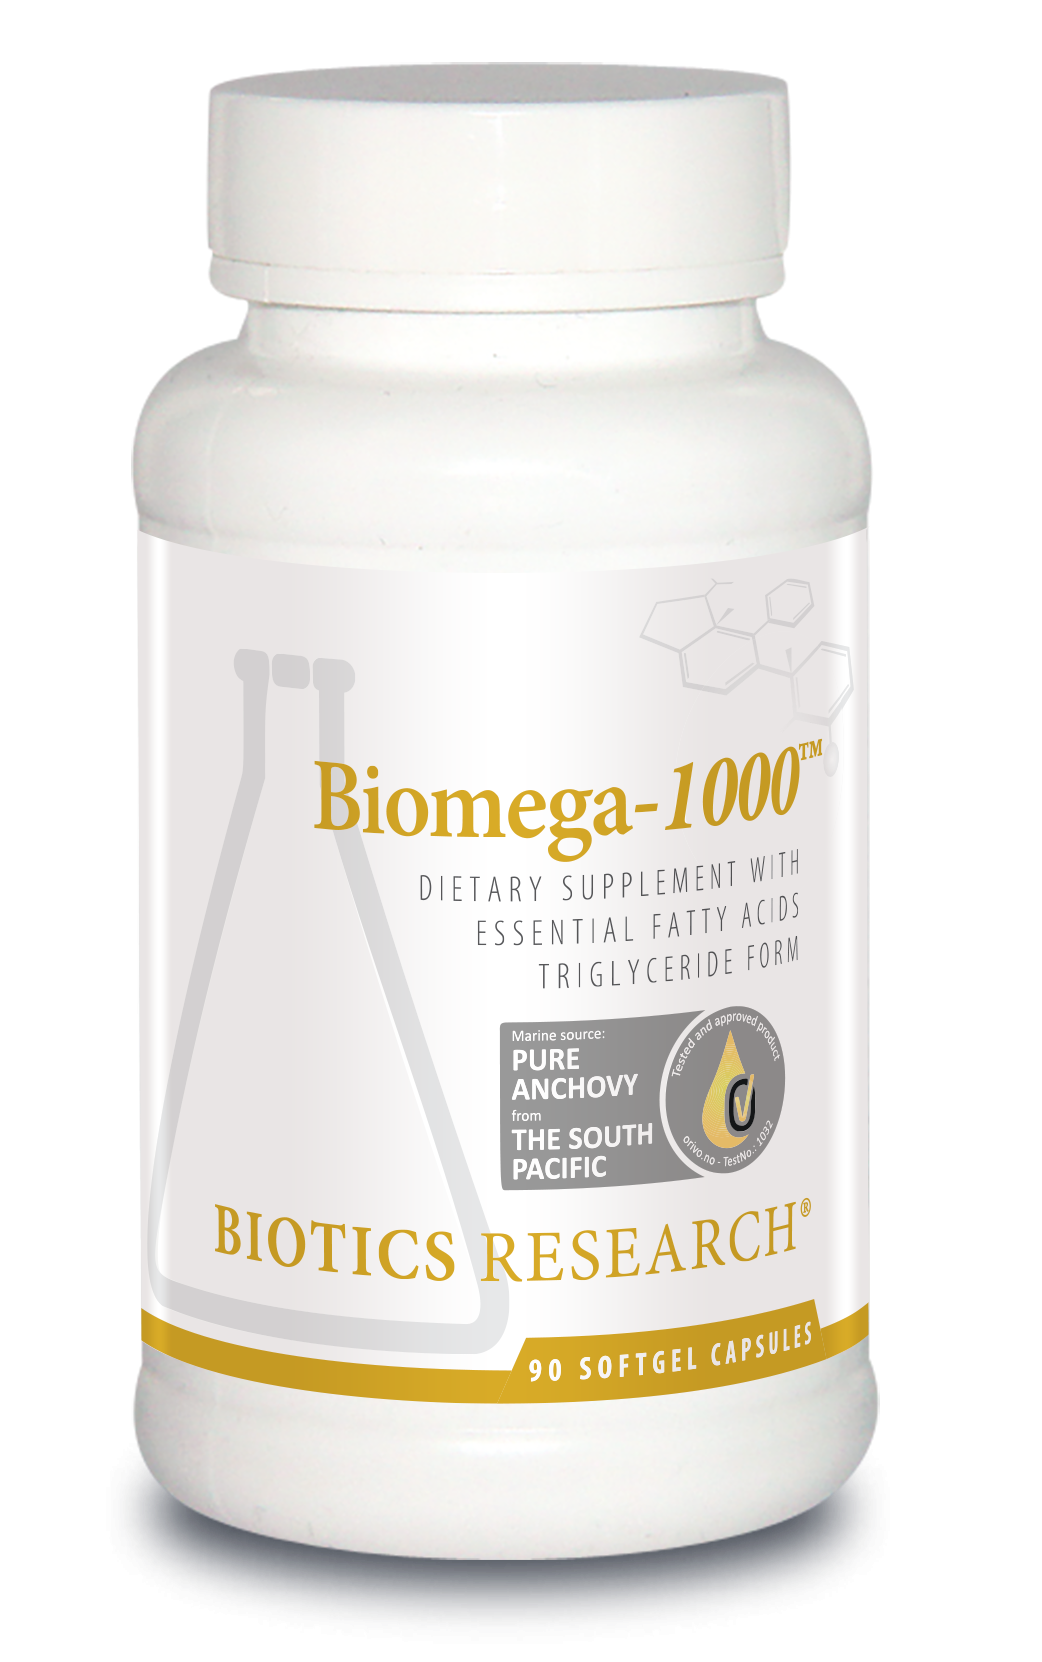 Biomega-1000